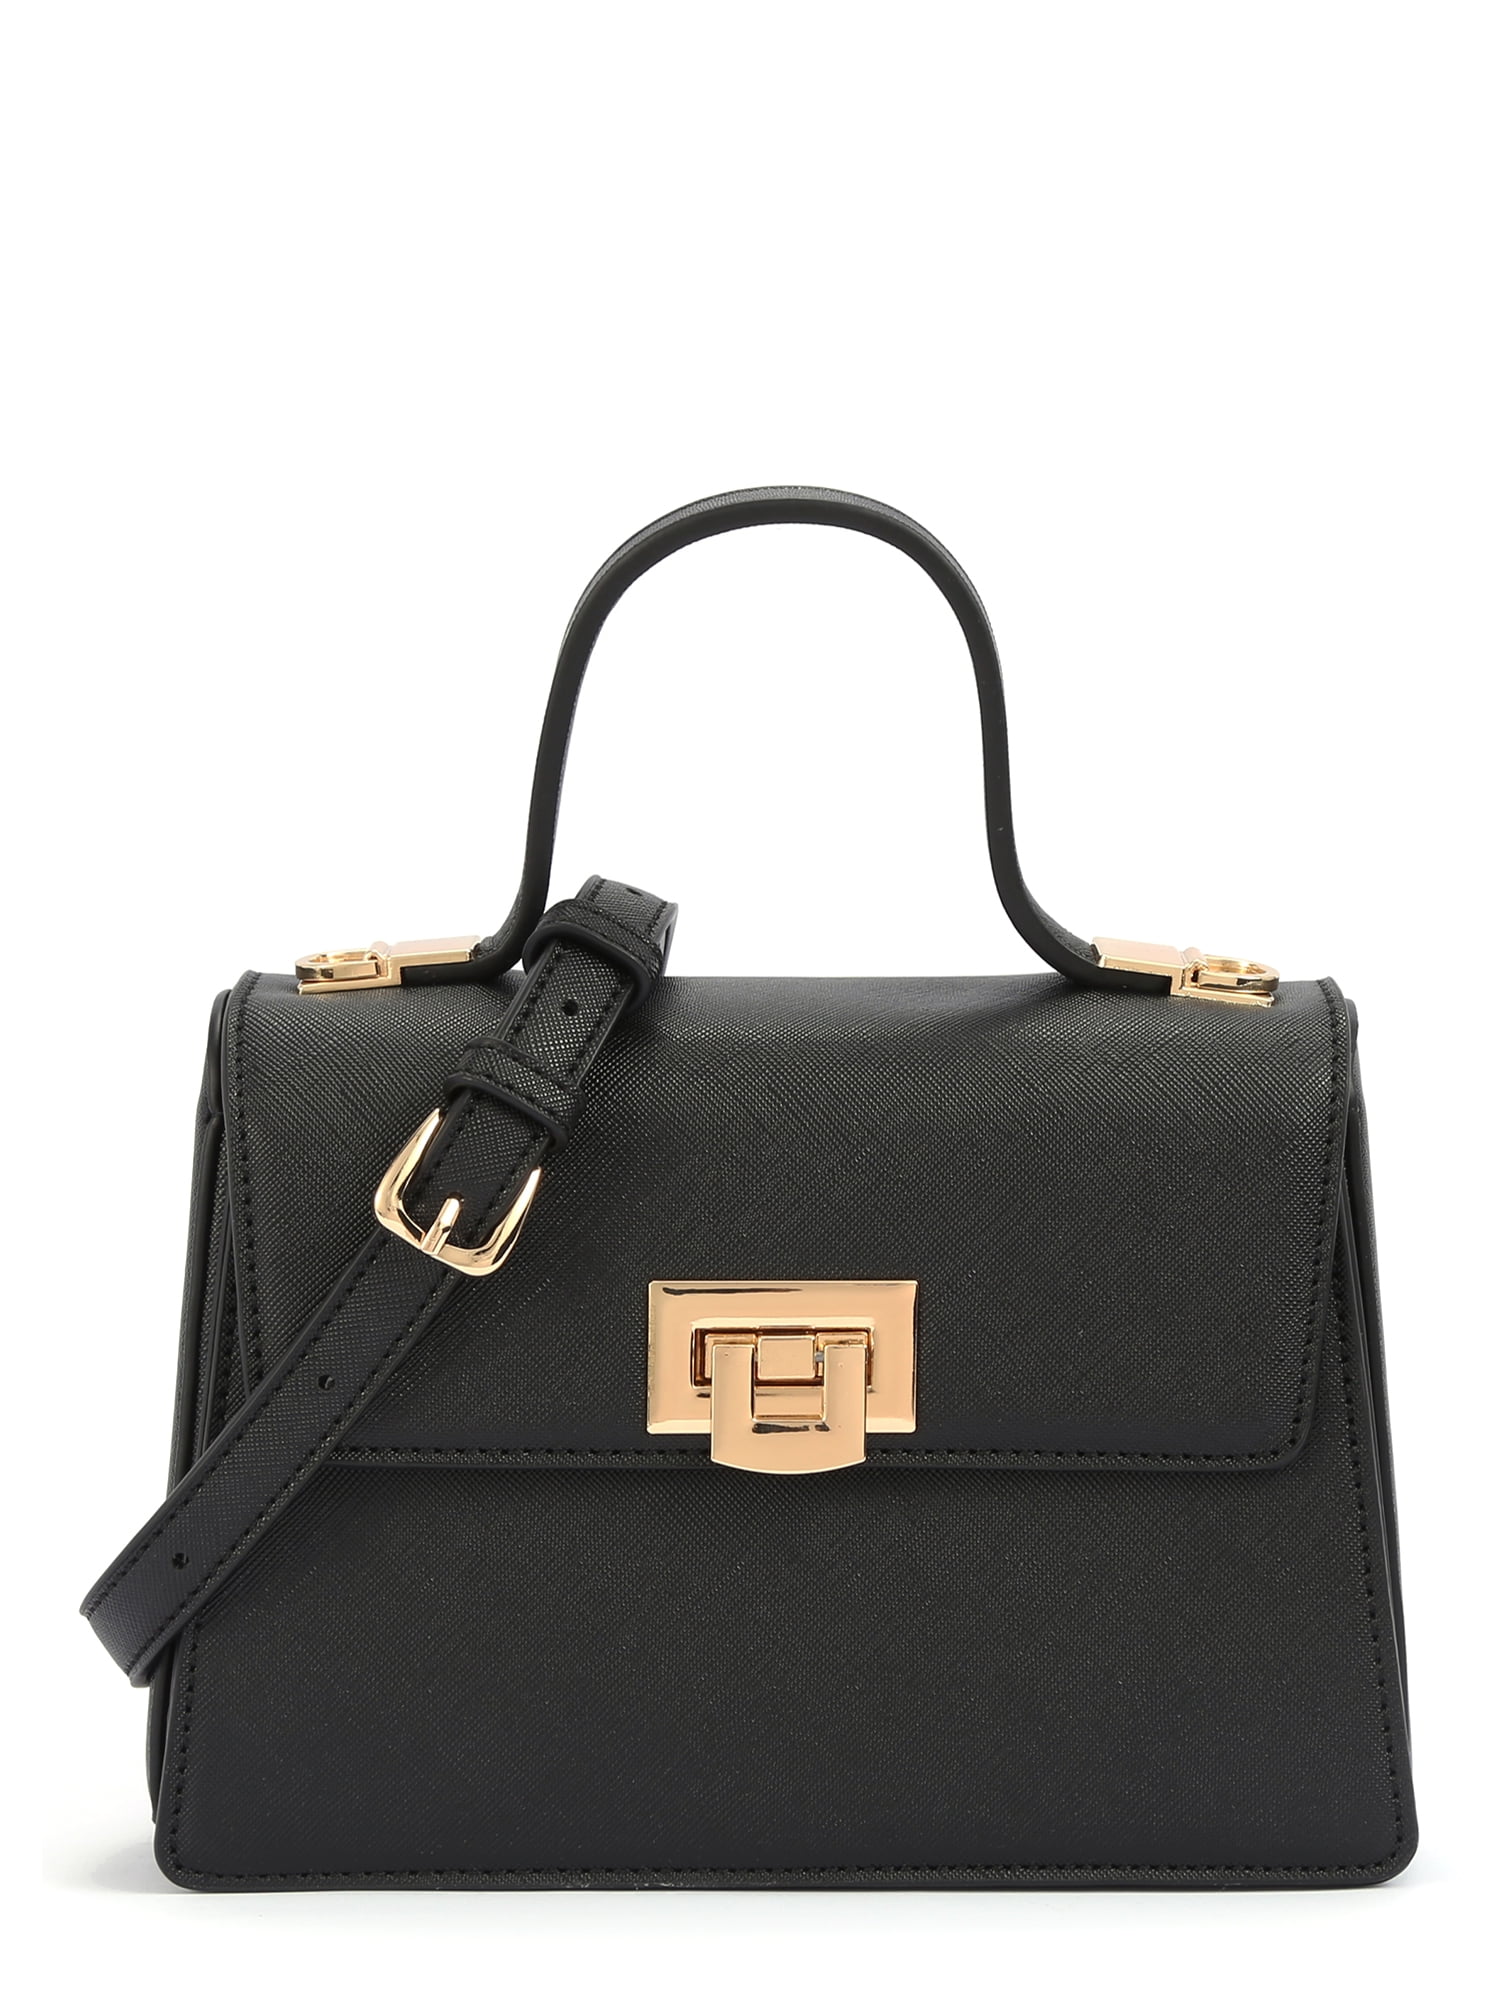 BeCool Women's Adult Top Handle Satchel Handbag with Lock Black ...